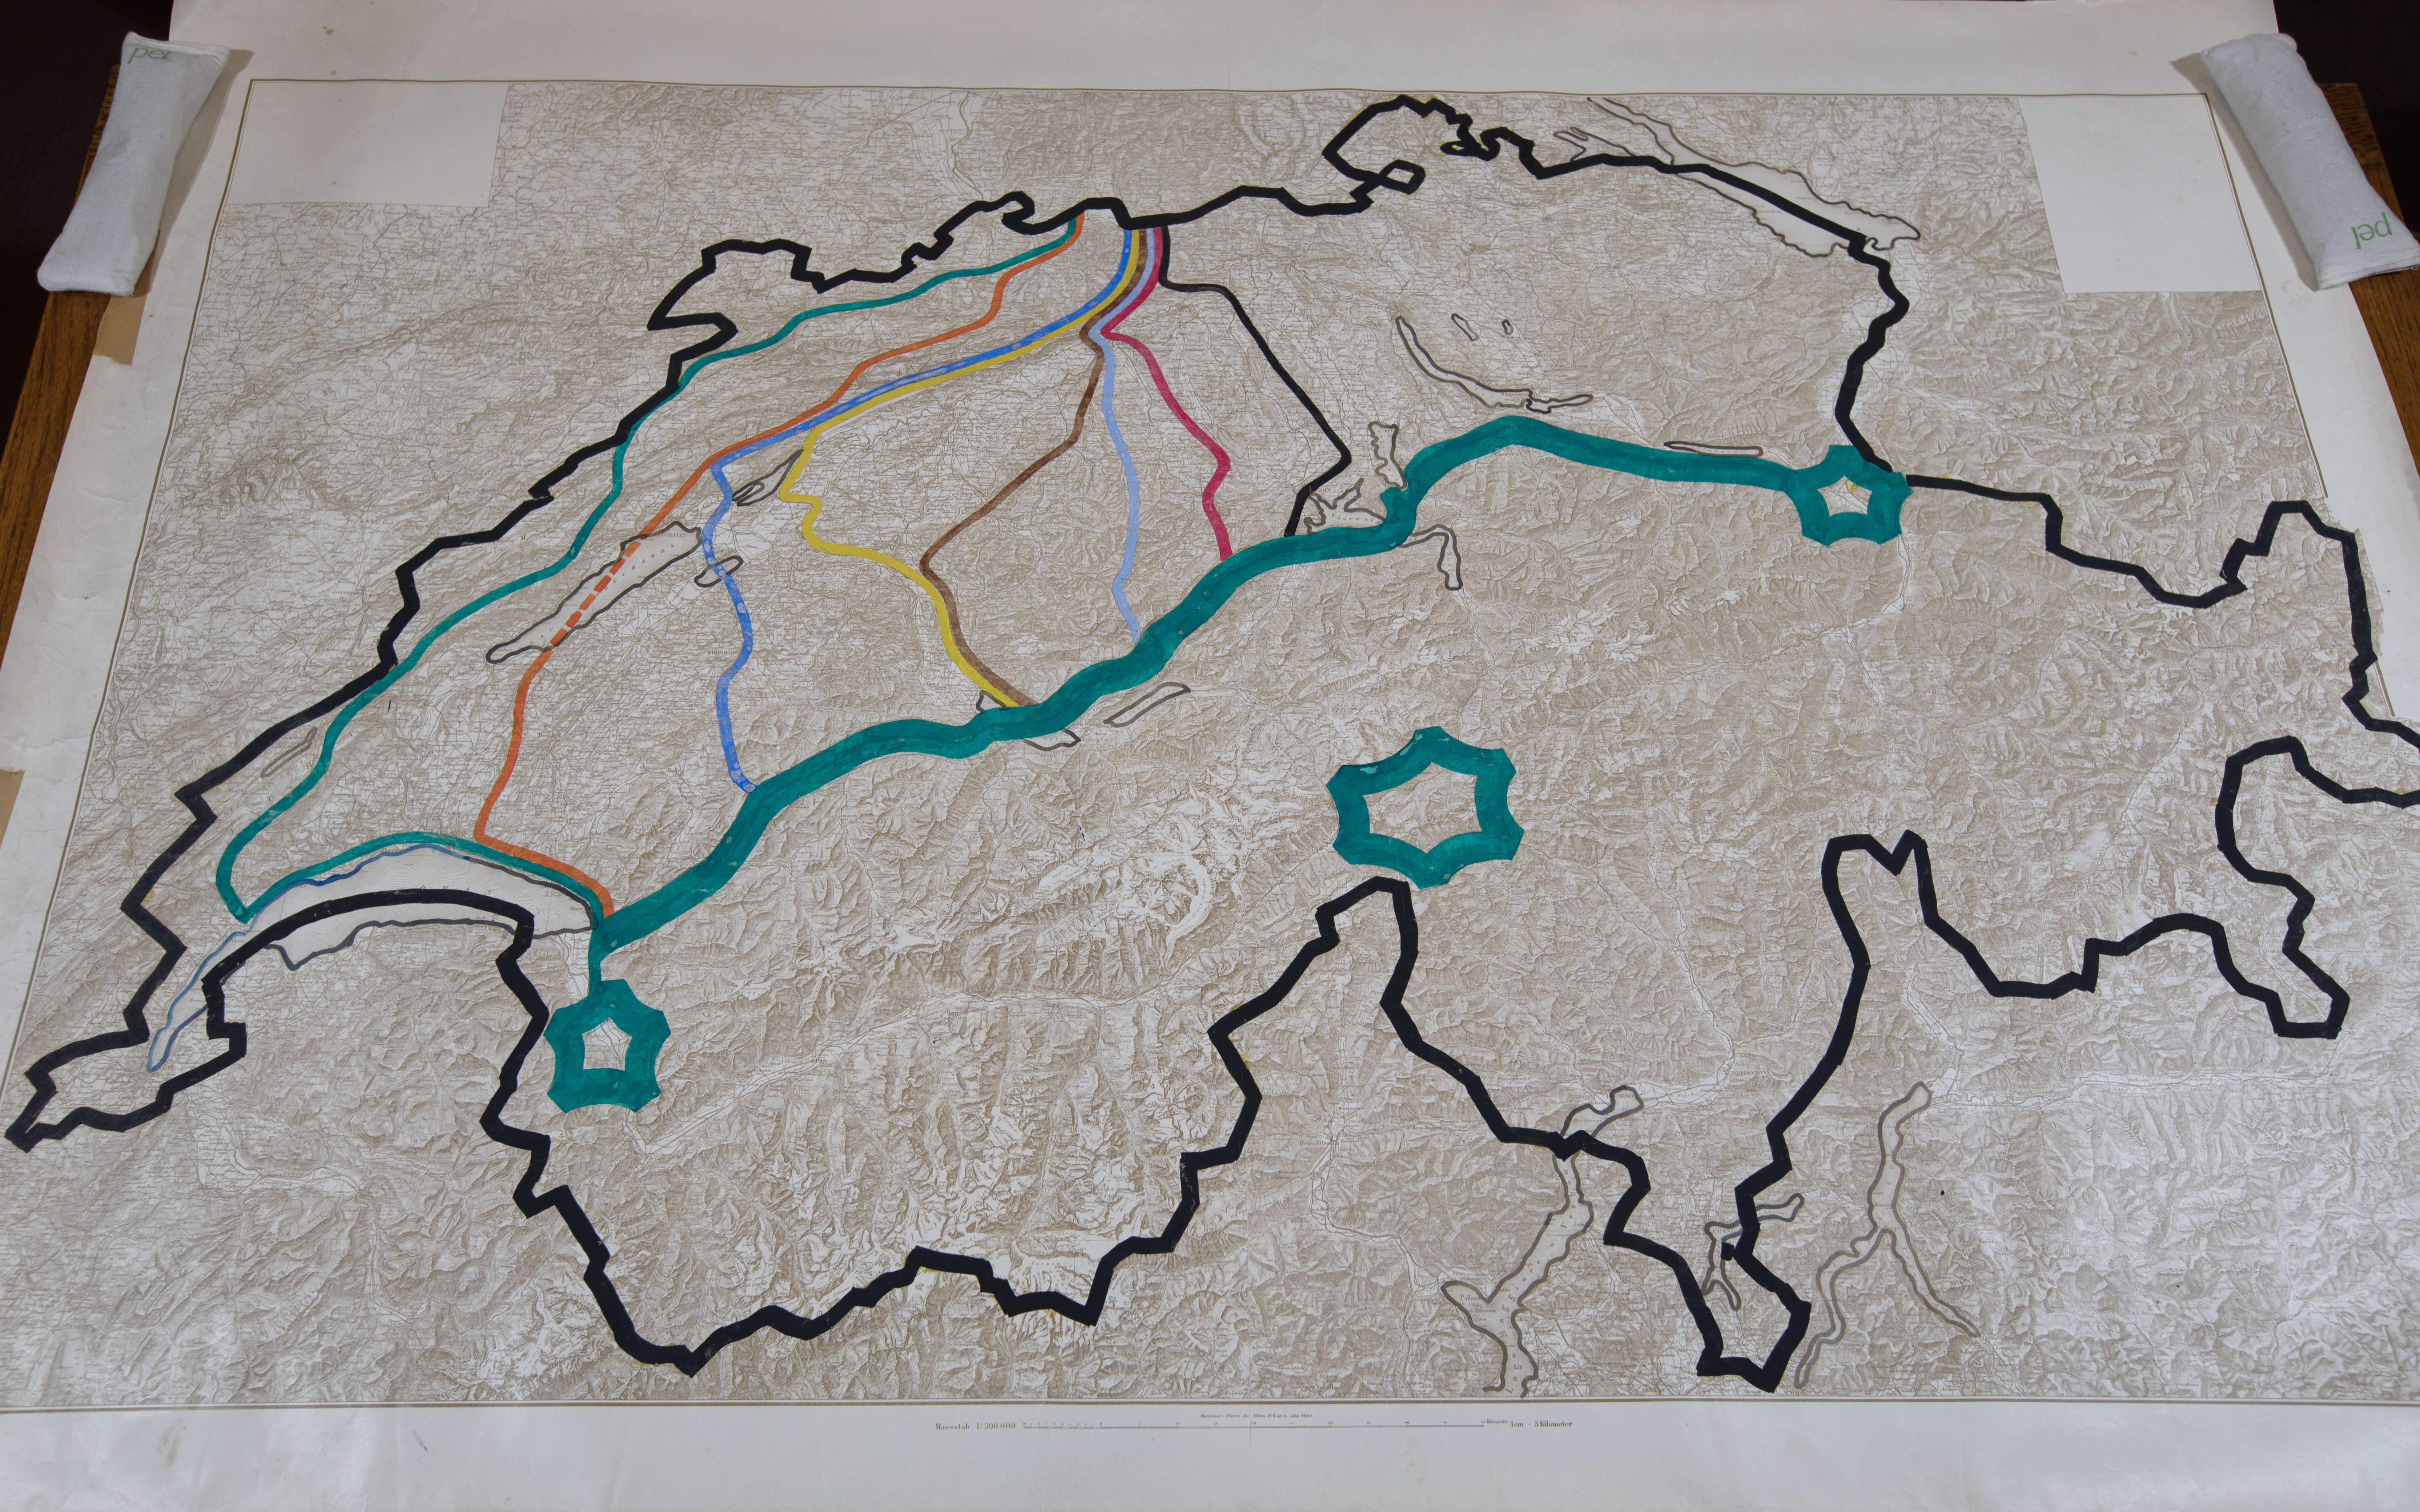 Reliefkarte der Schweiz. Die Landesgrenze ist schwarz markiert. Entlang der  Nordflanke der Alpen ist eine fette türkise Linie gezogen. Sie markiert die Réduitlinie. Die drei Alpenfestungen St. Maurice, Gotthard und Sargans sind markiert. Durchs Mittelland gehen mehrere Verteidigungslinien, die verschiedenfarbig eingezeichnet sind.